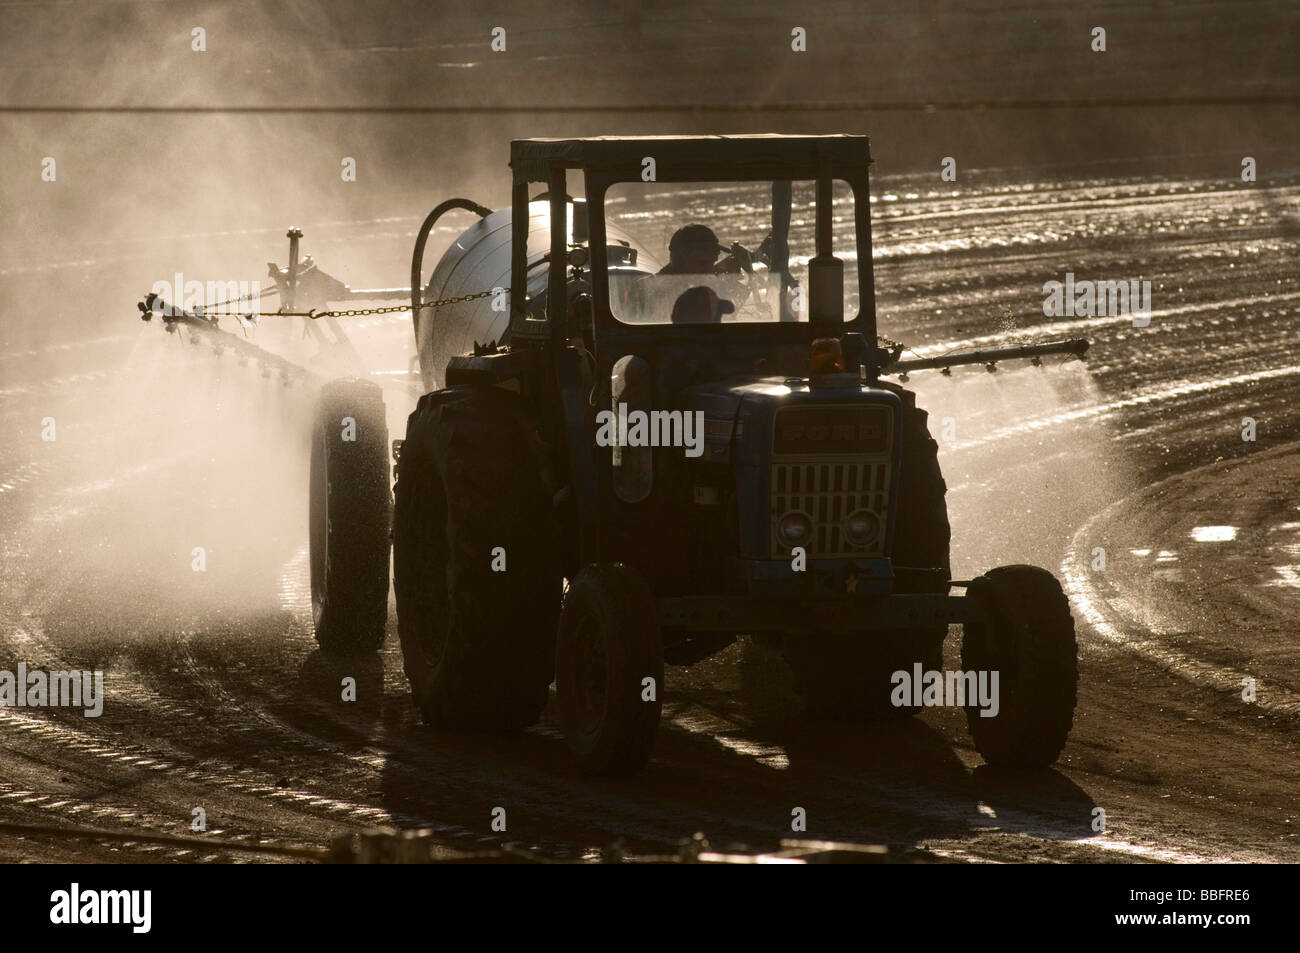 De pesticida pulverizador tractor tractores agrícolas de granja de producción intensiva de alimentos productos químicos química producida intensivamente ferti Foto de stock